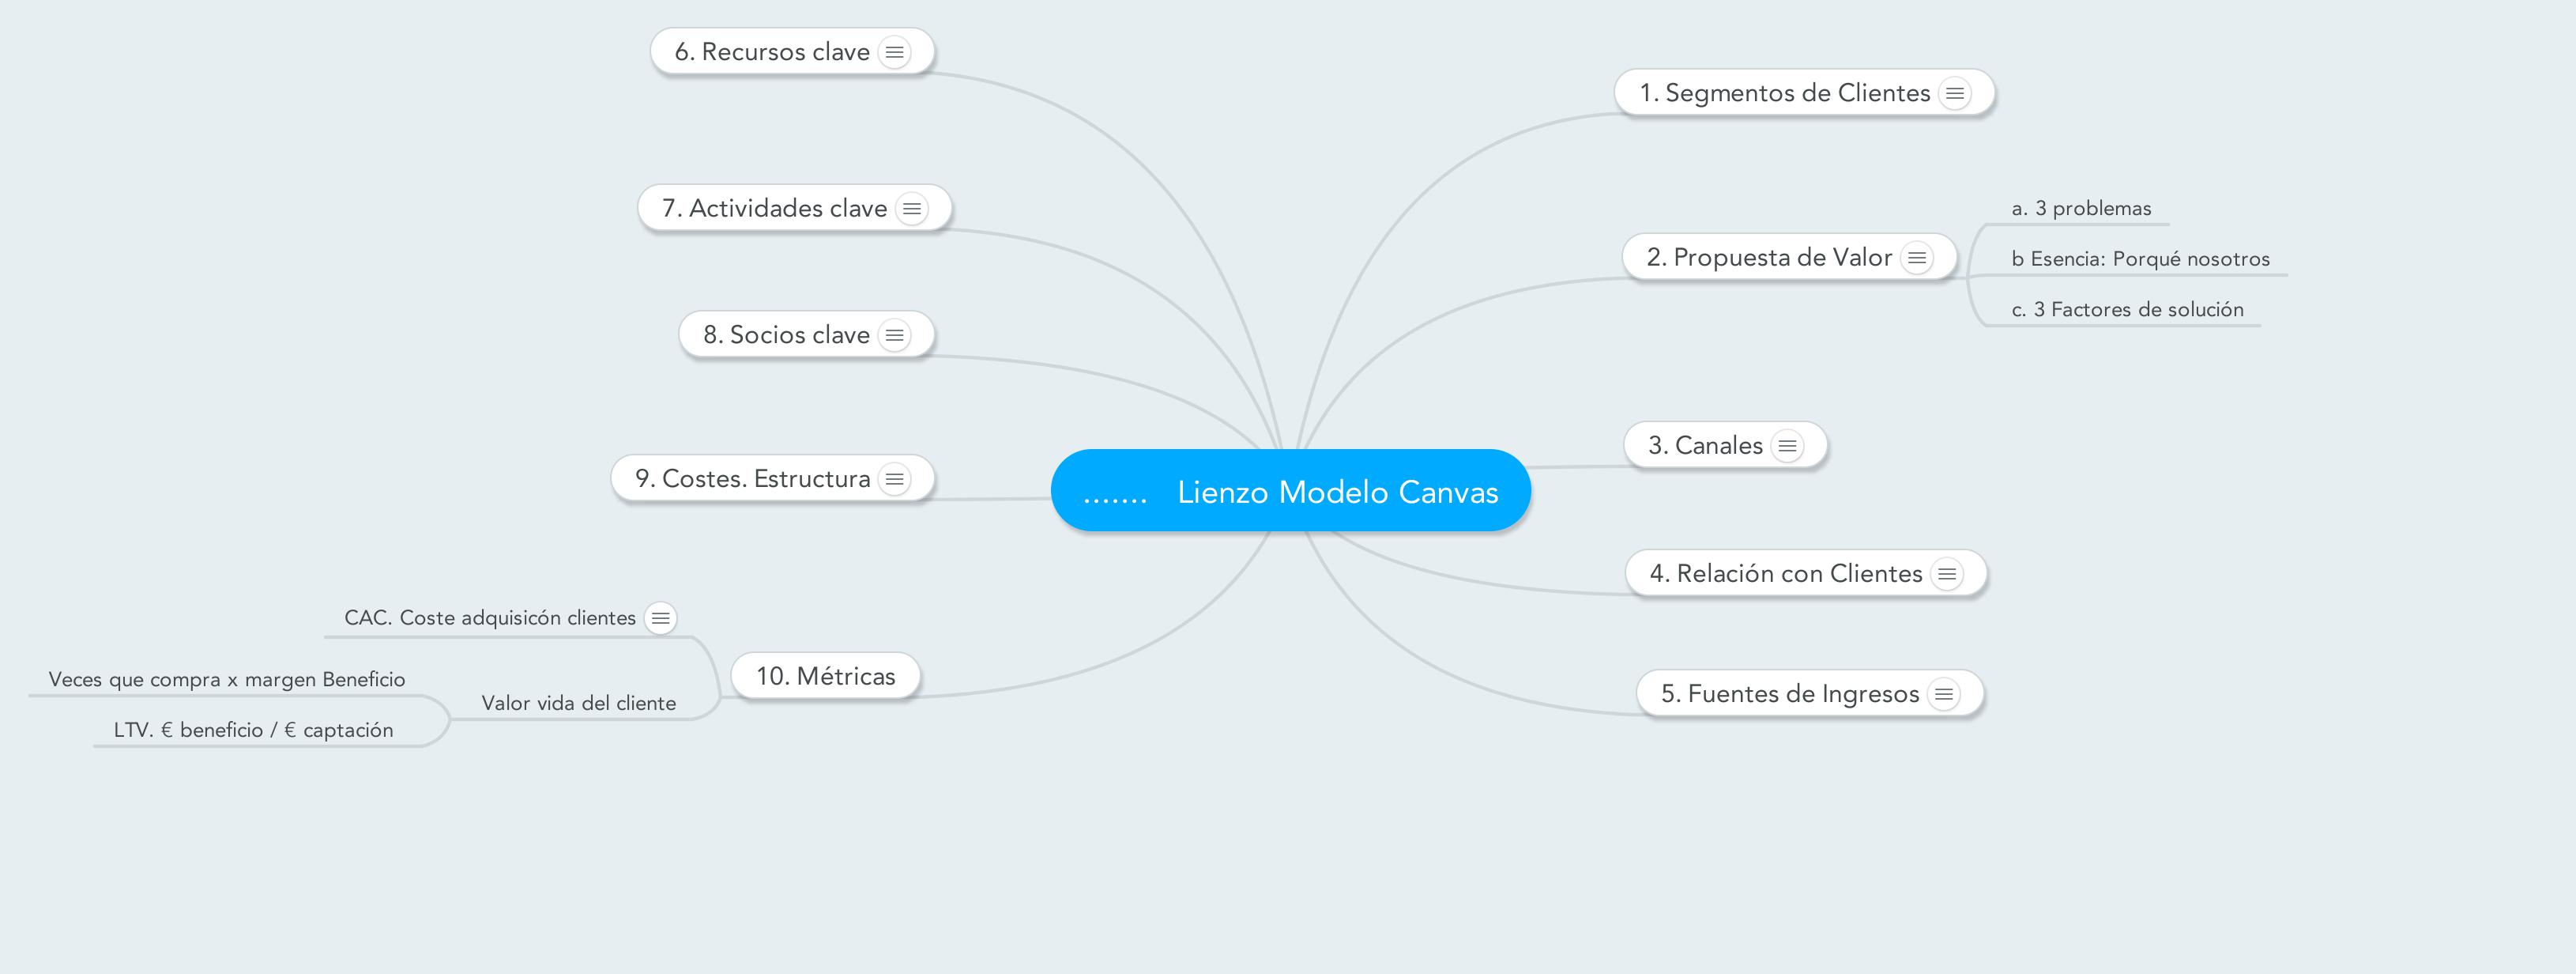 Lienzo_Modelo_Canvas adaptado